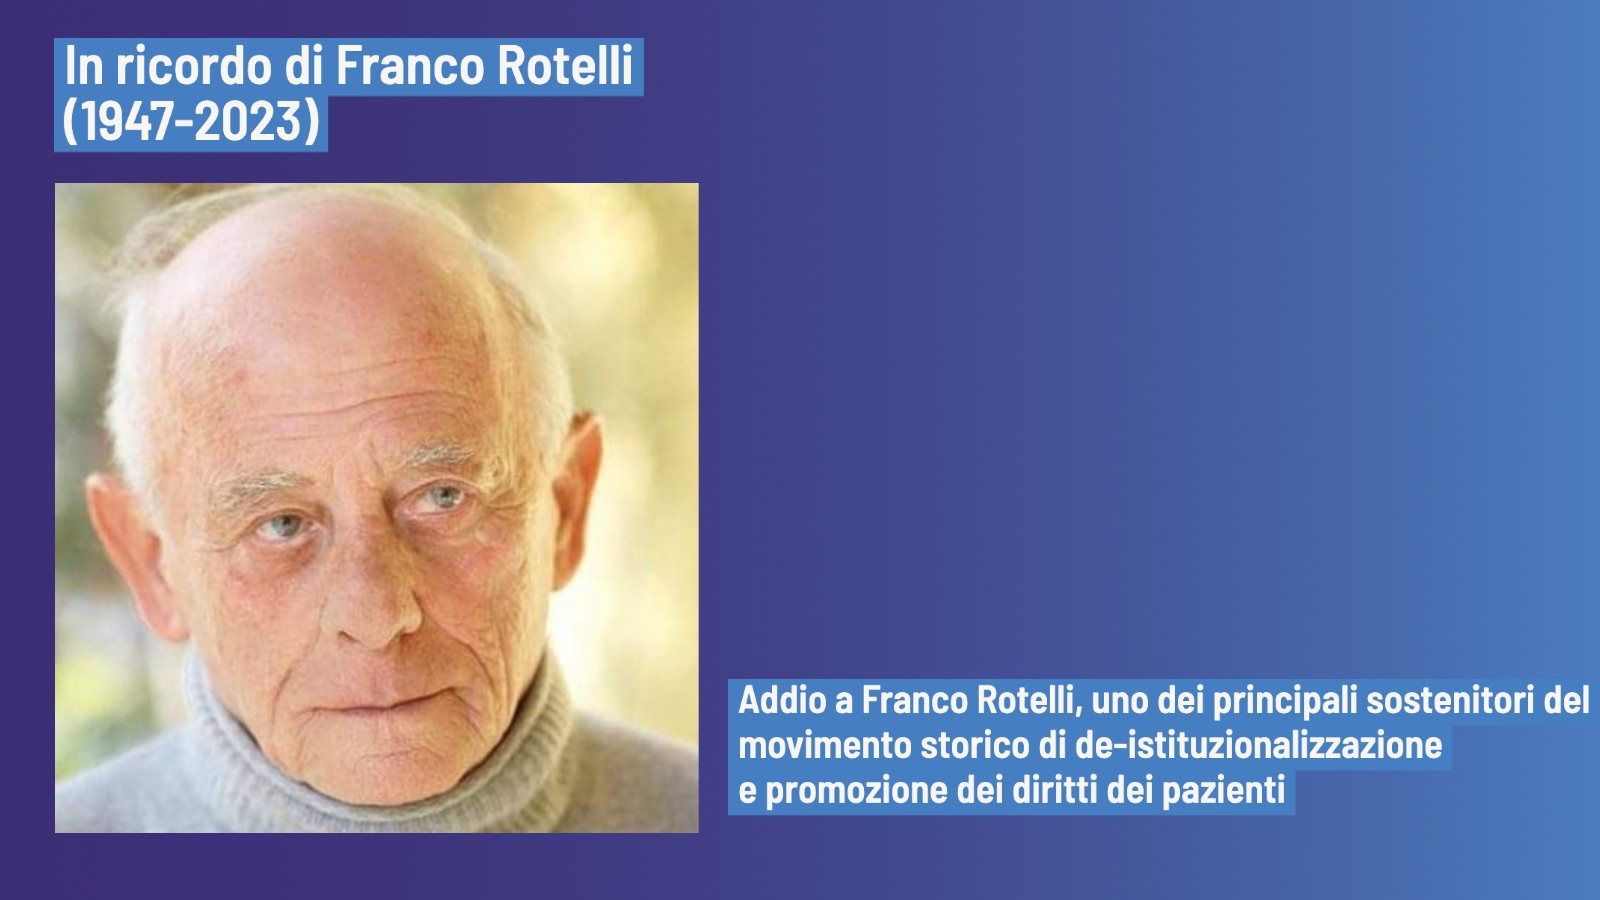 Franco Rotelli in ricordo del suo importante contributo ai diritti dei pazienti